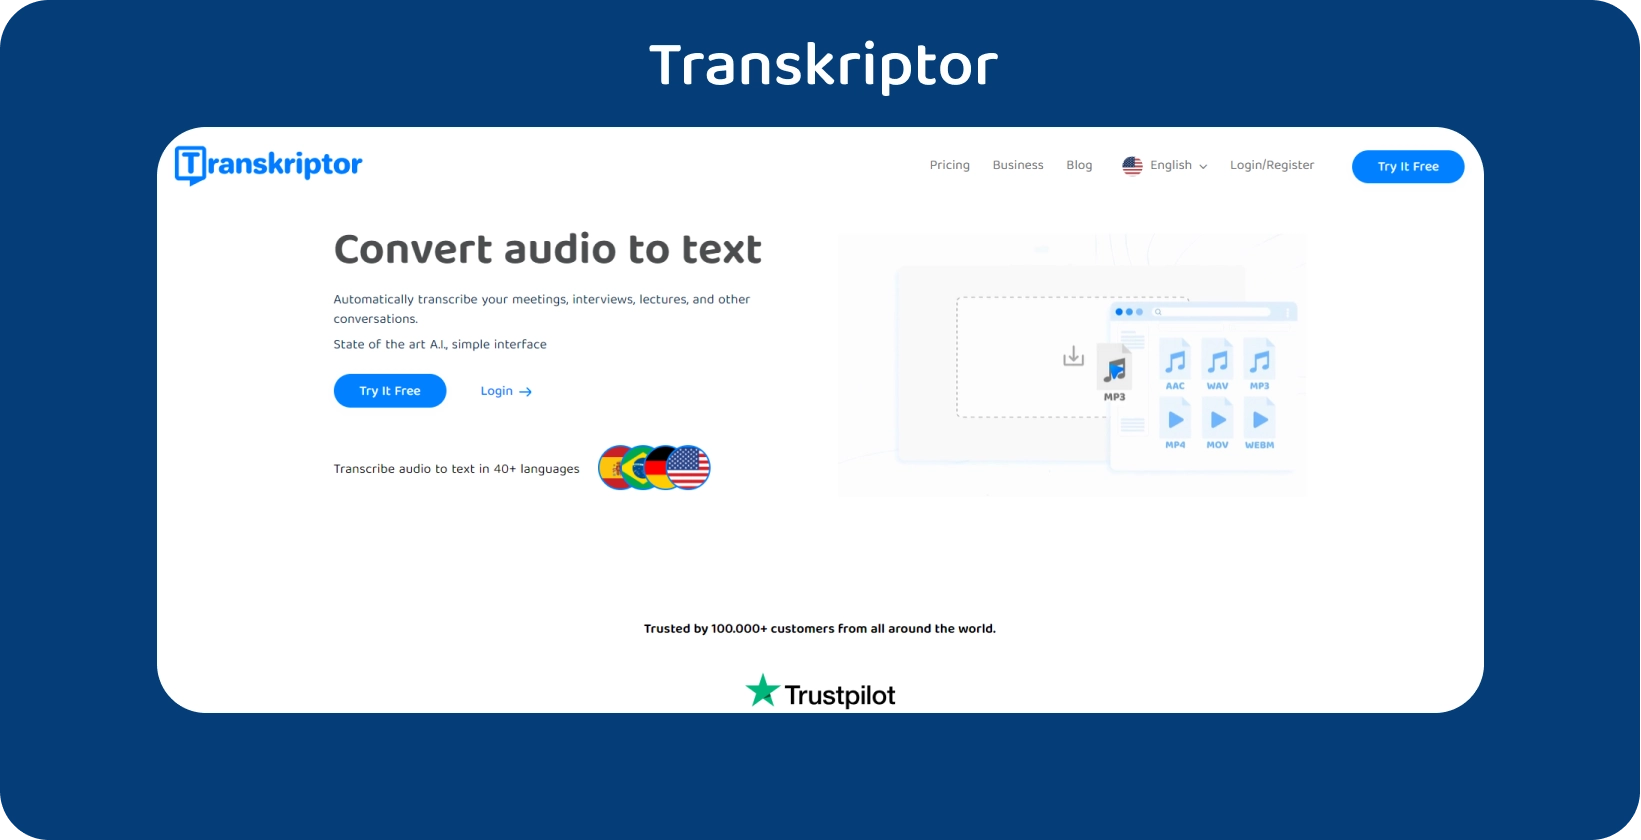 Transkriptor página inicial com um claro call to action, oferecendo serviços de transcrição de áudio para texto.